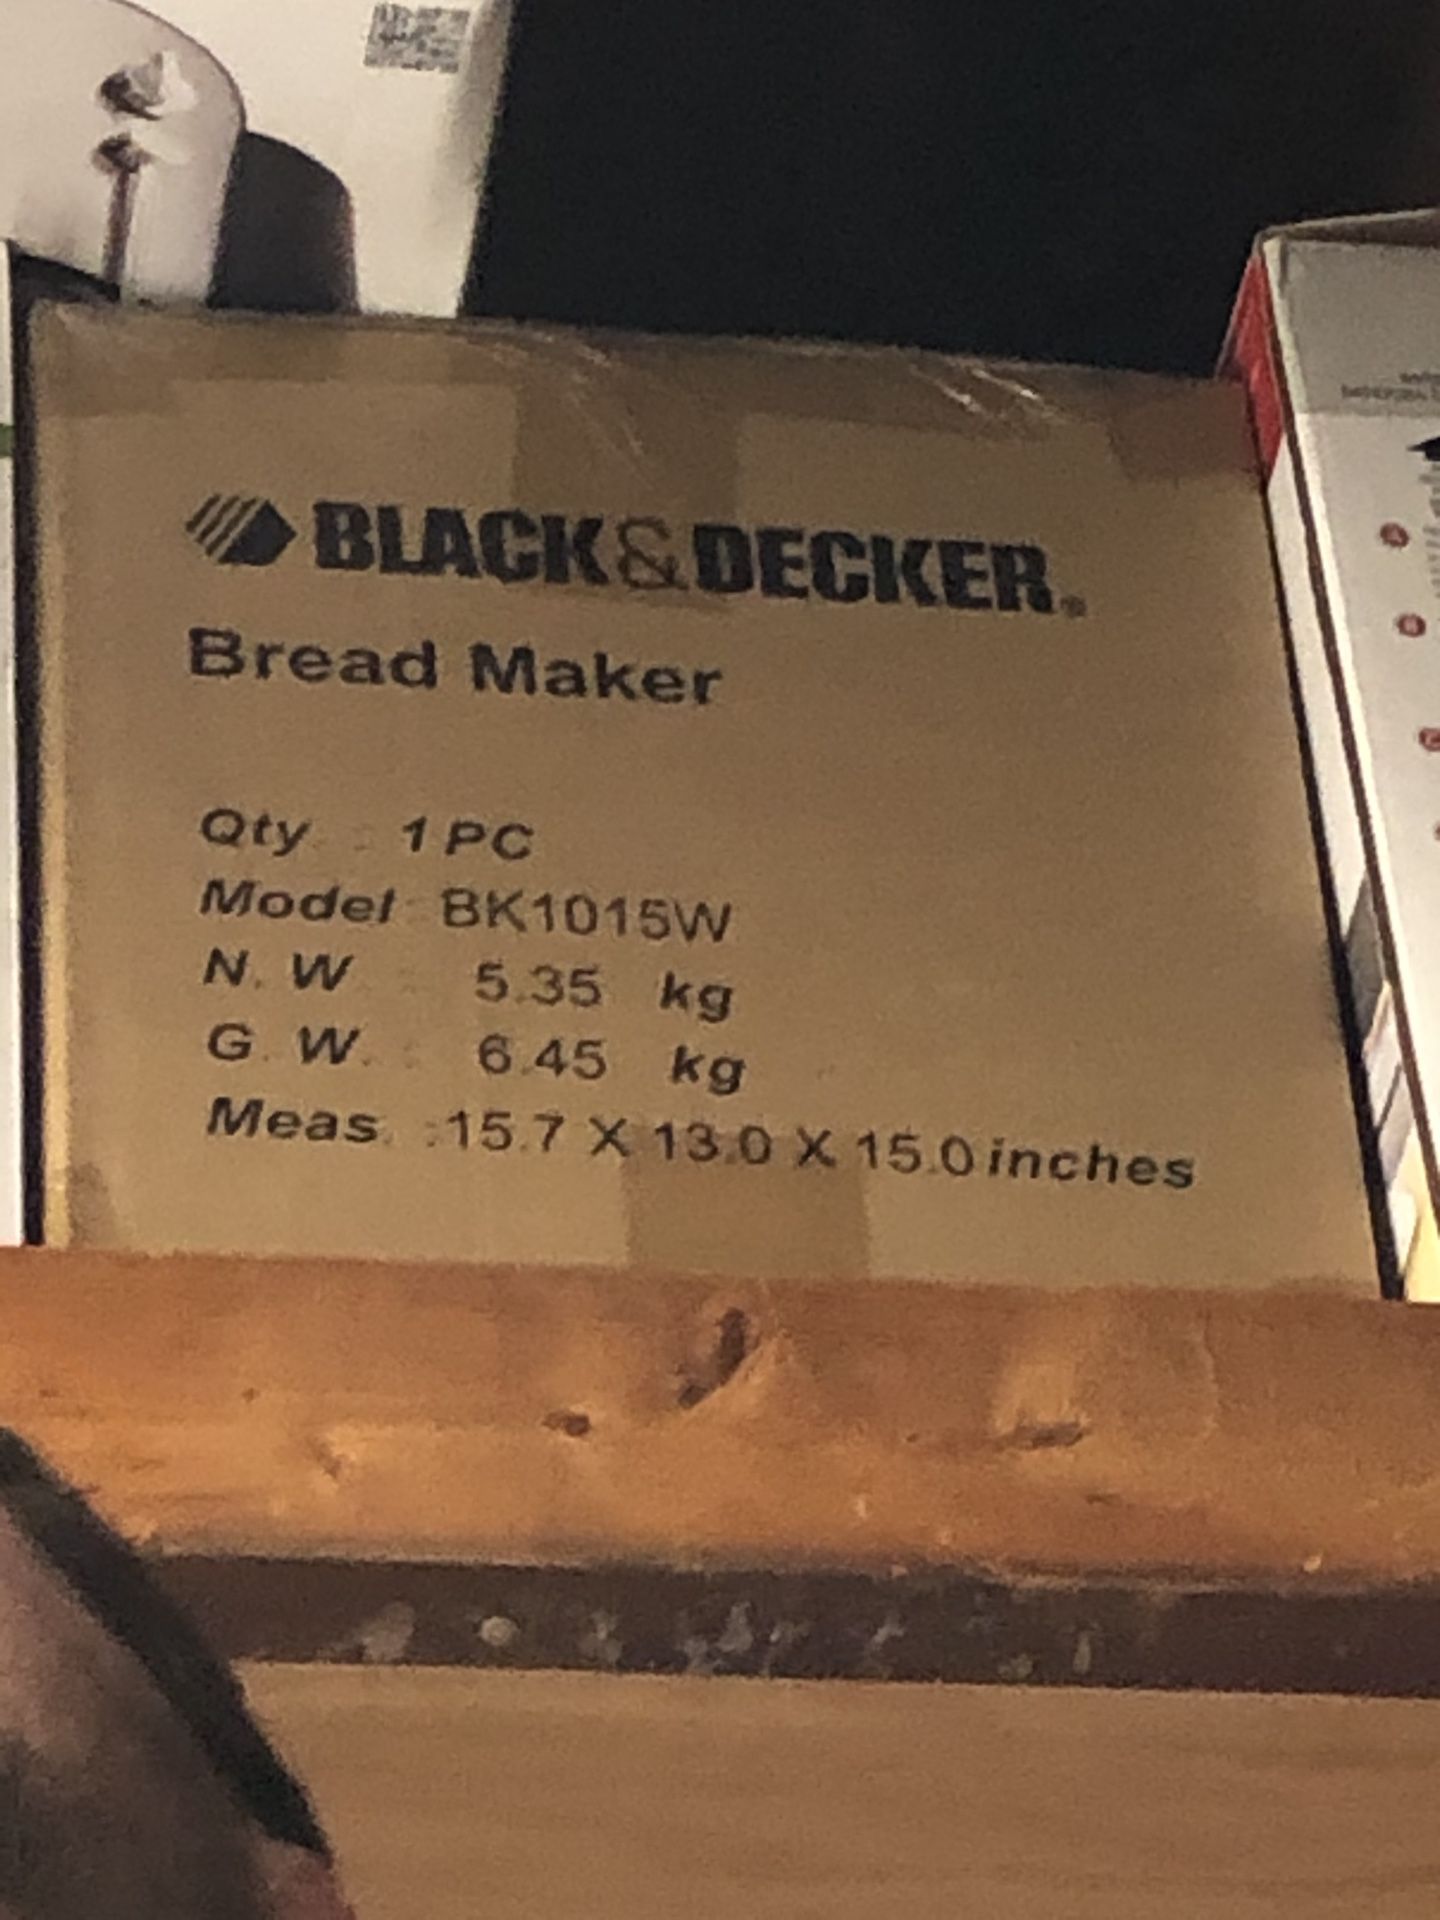 Brand new never opened bread maker.